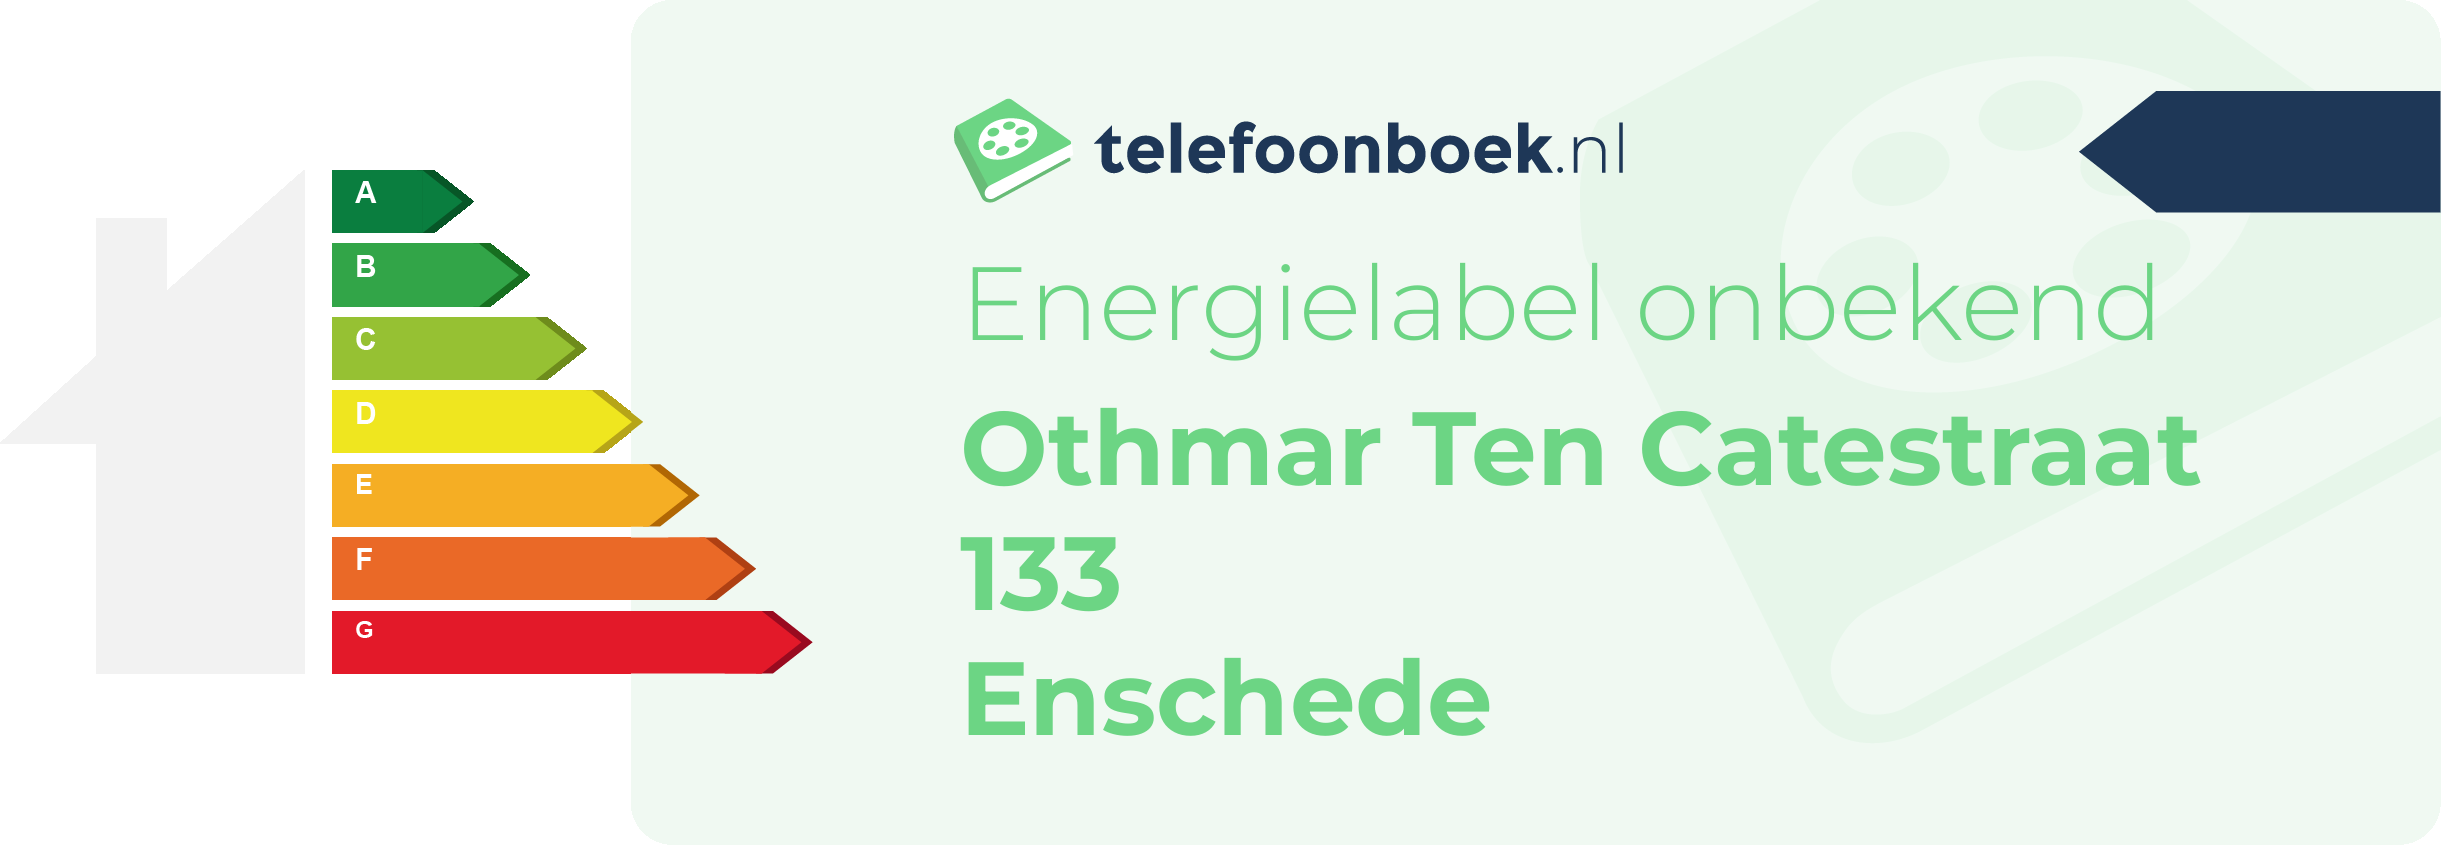 Energielabel Othmar Ten Catestraat 133 Enschede